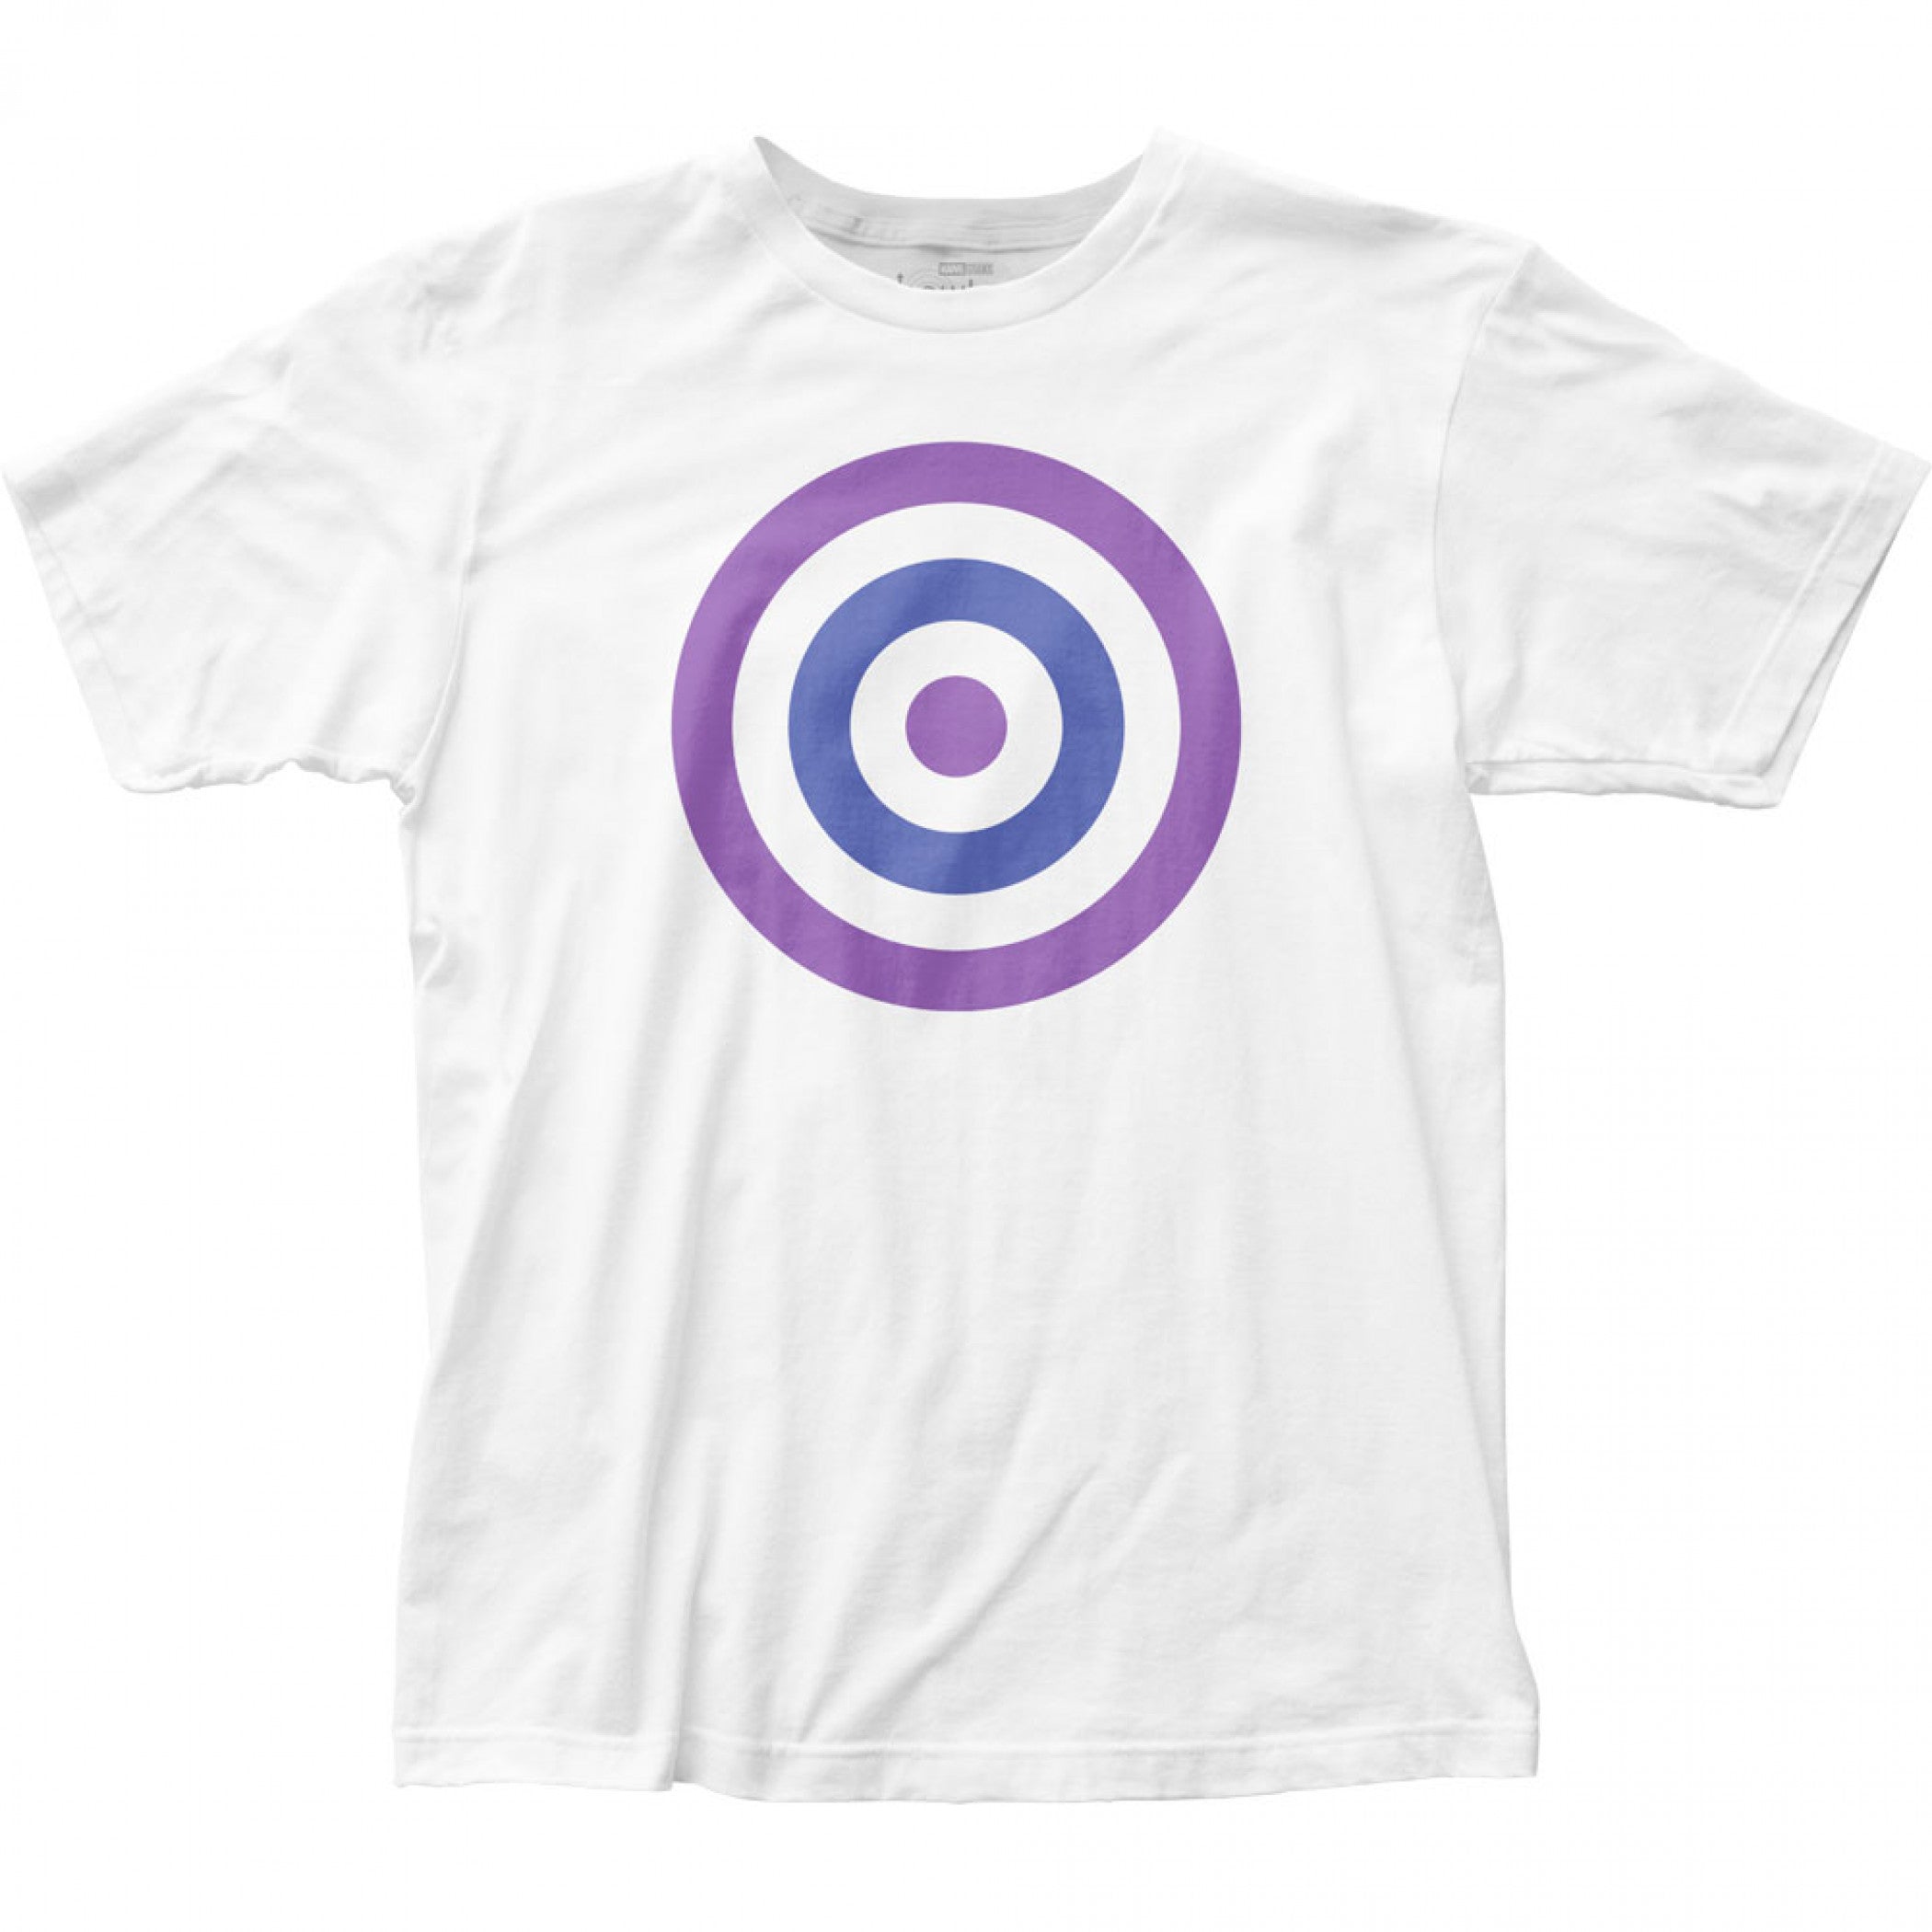 title:Marvel Studios Hawkeye Series Bullseye Symbol White T-Shirt;color:White